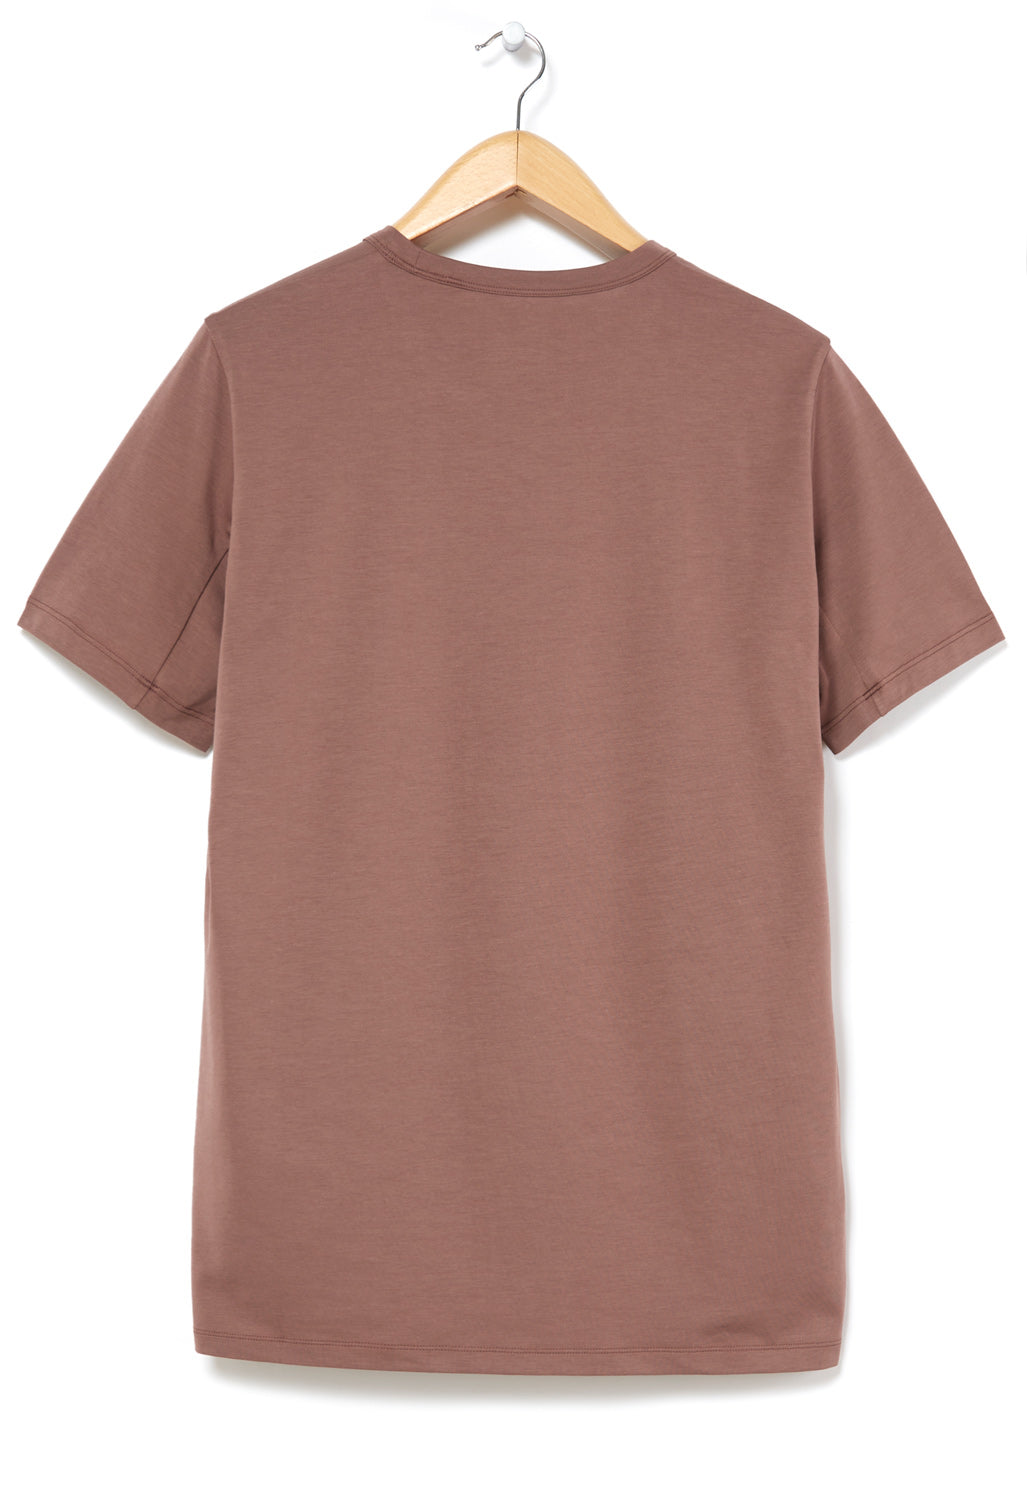 Arc'teryx Men's Captive Split T-Shirt - Velvet Sand